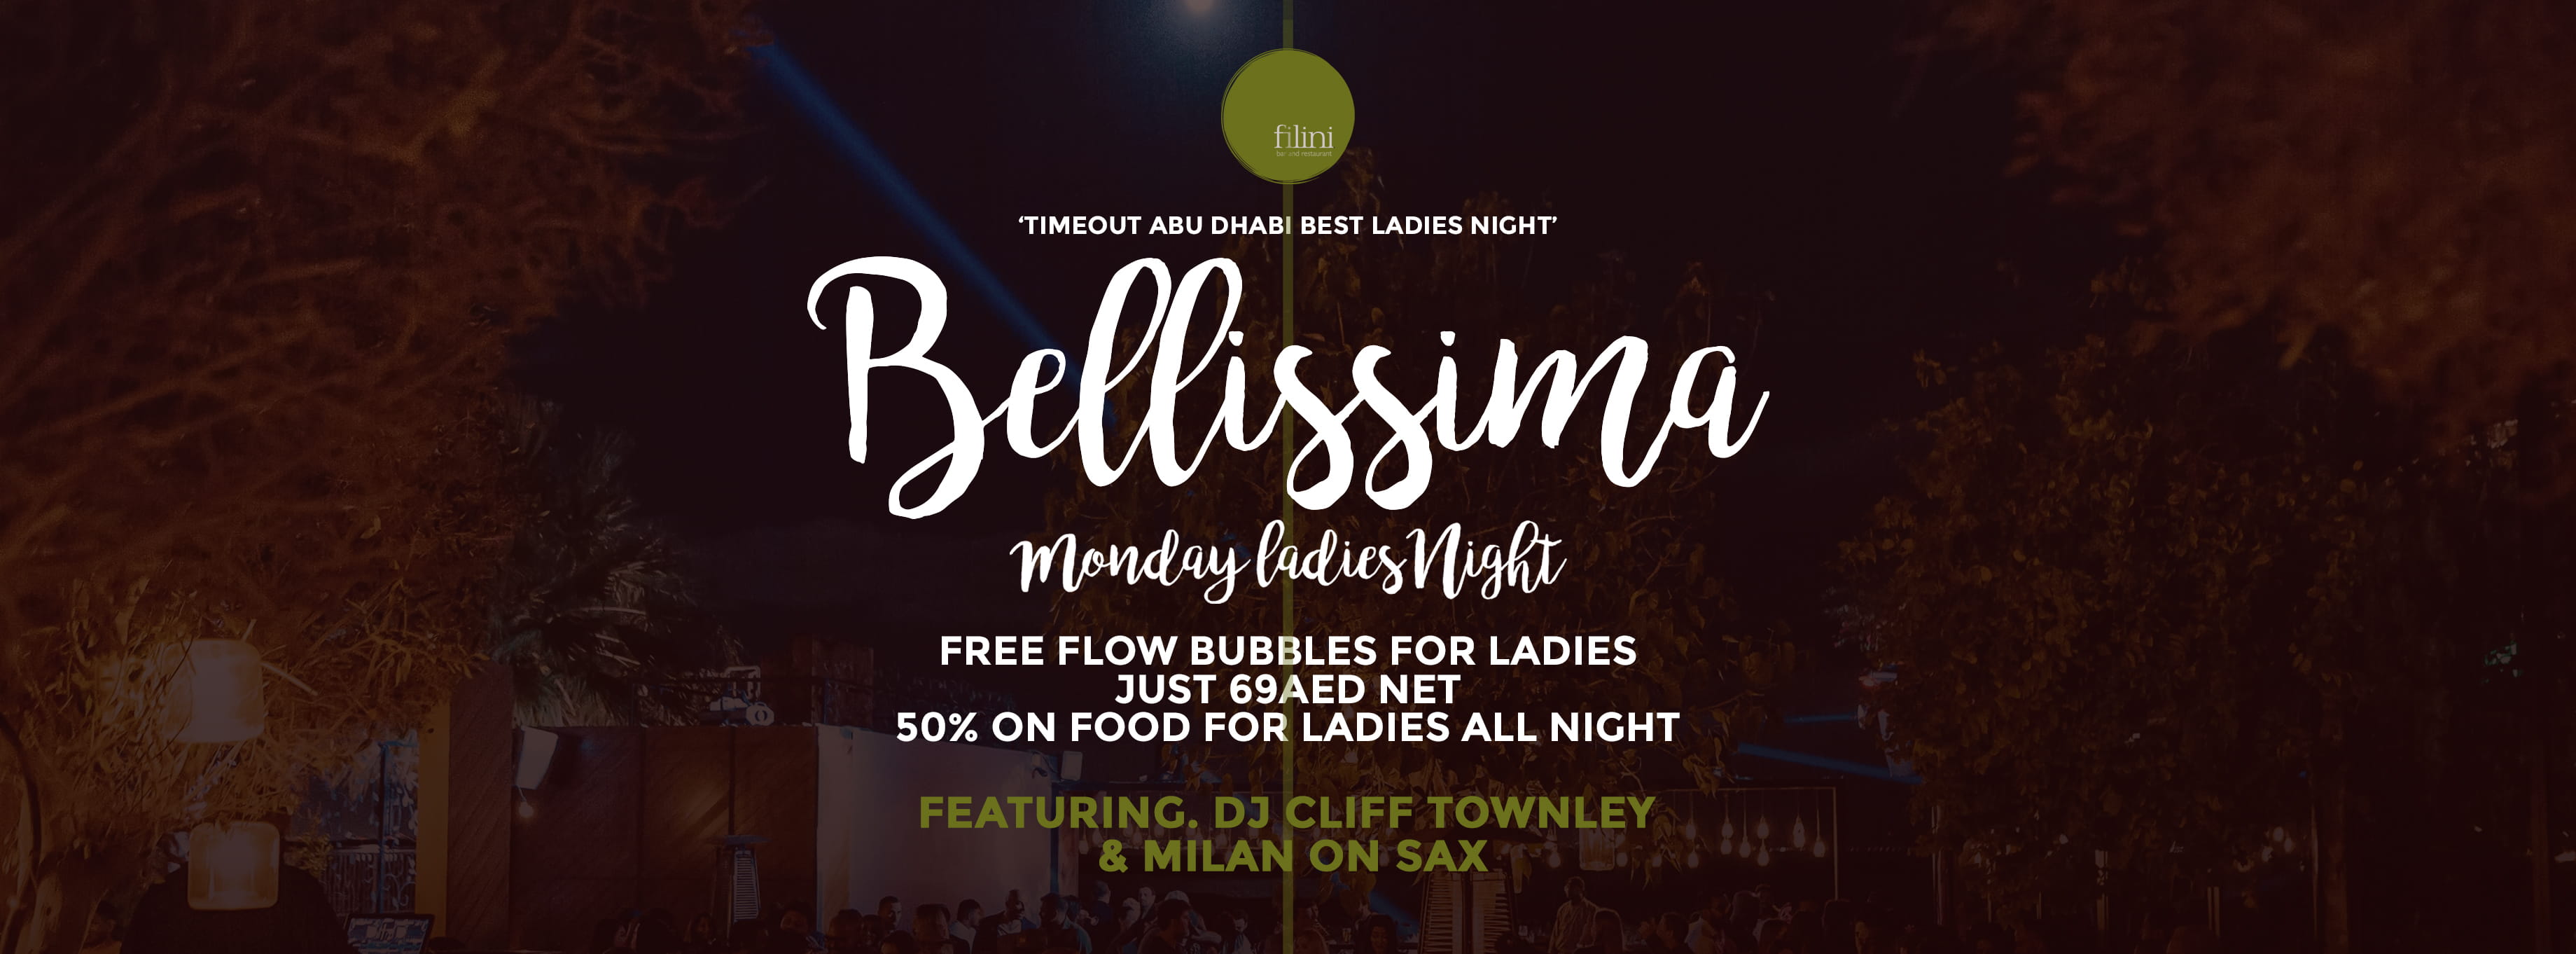 Bellissima Ladies Night @ Filini Gardens